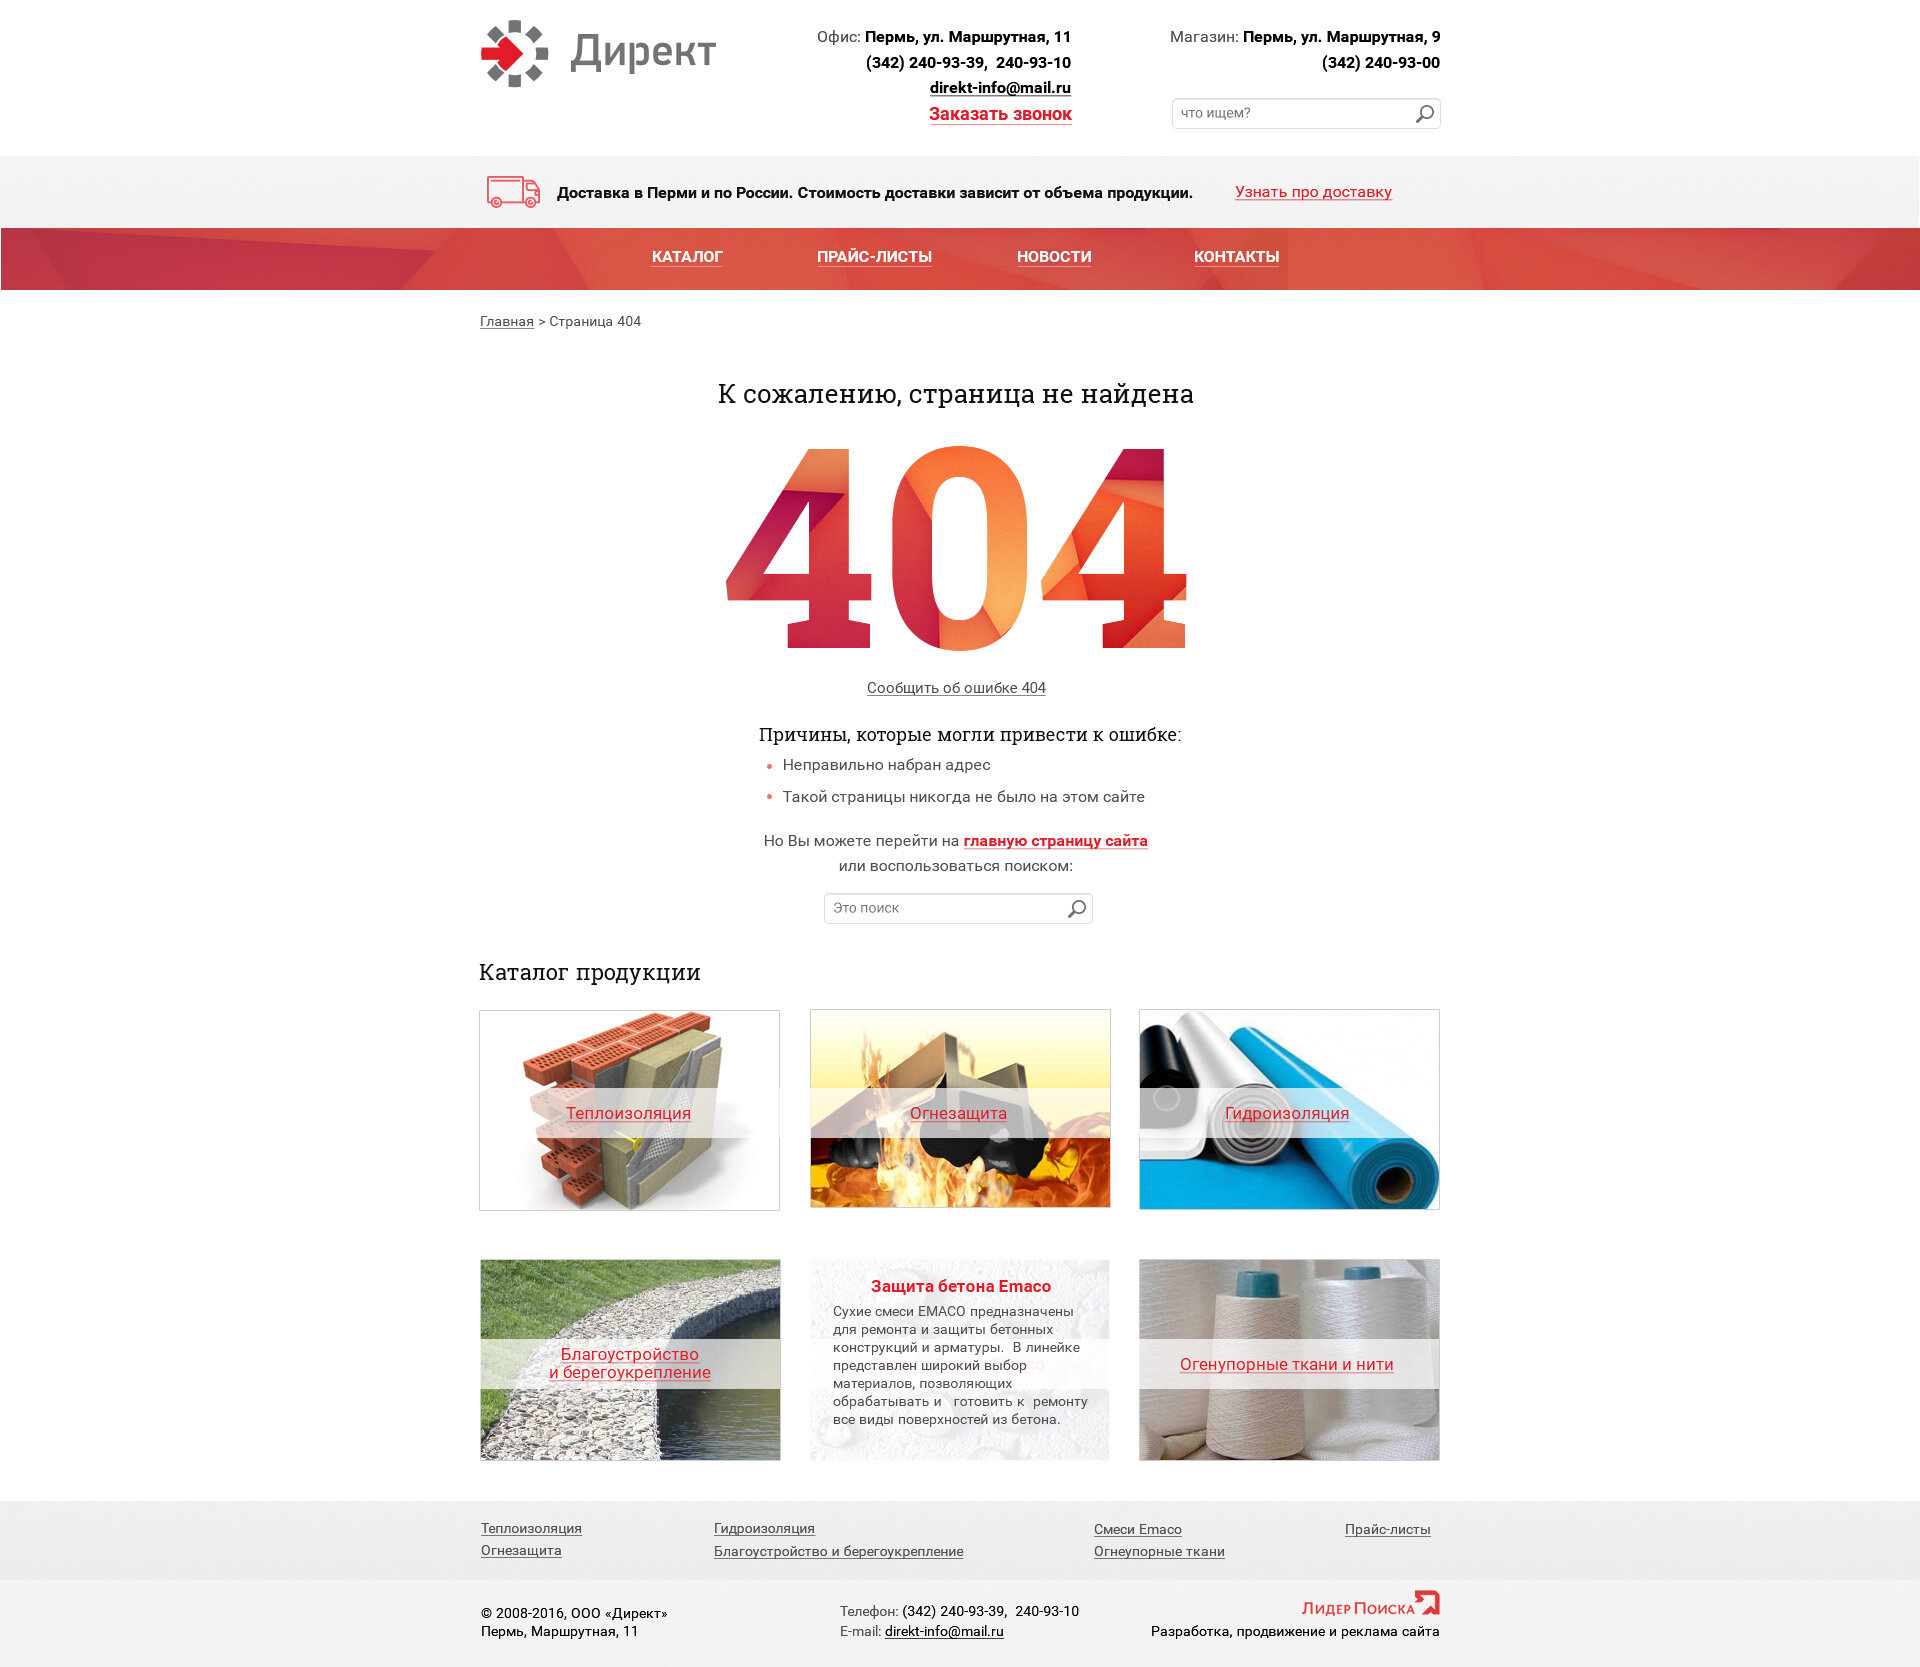 Еще один вариант предложения отправить отчет о 404 ошибке